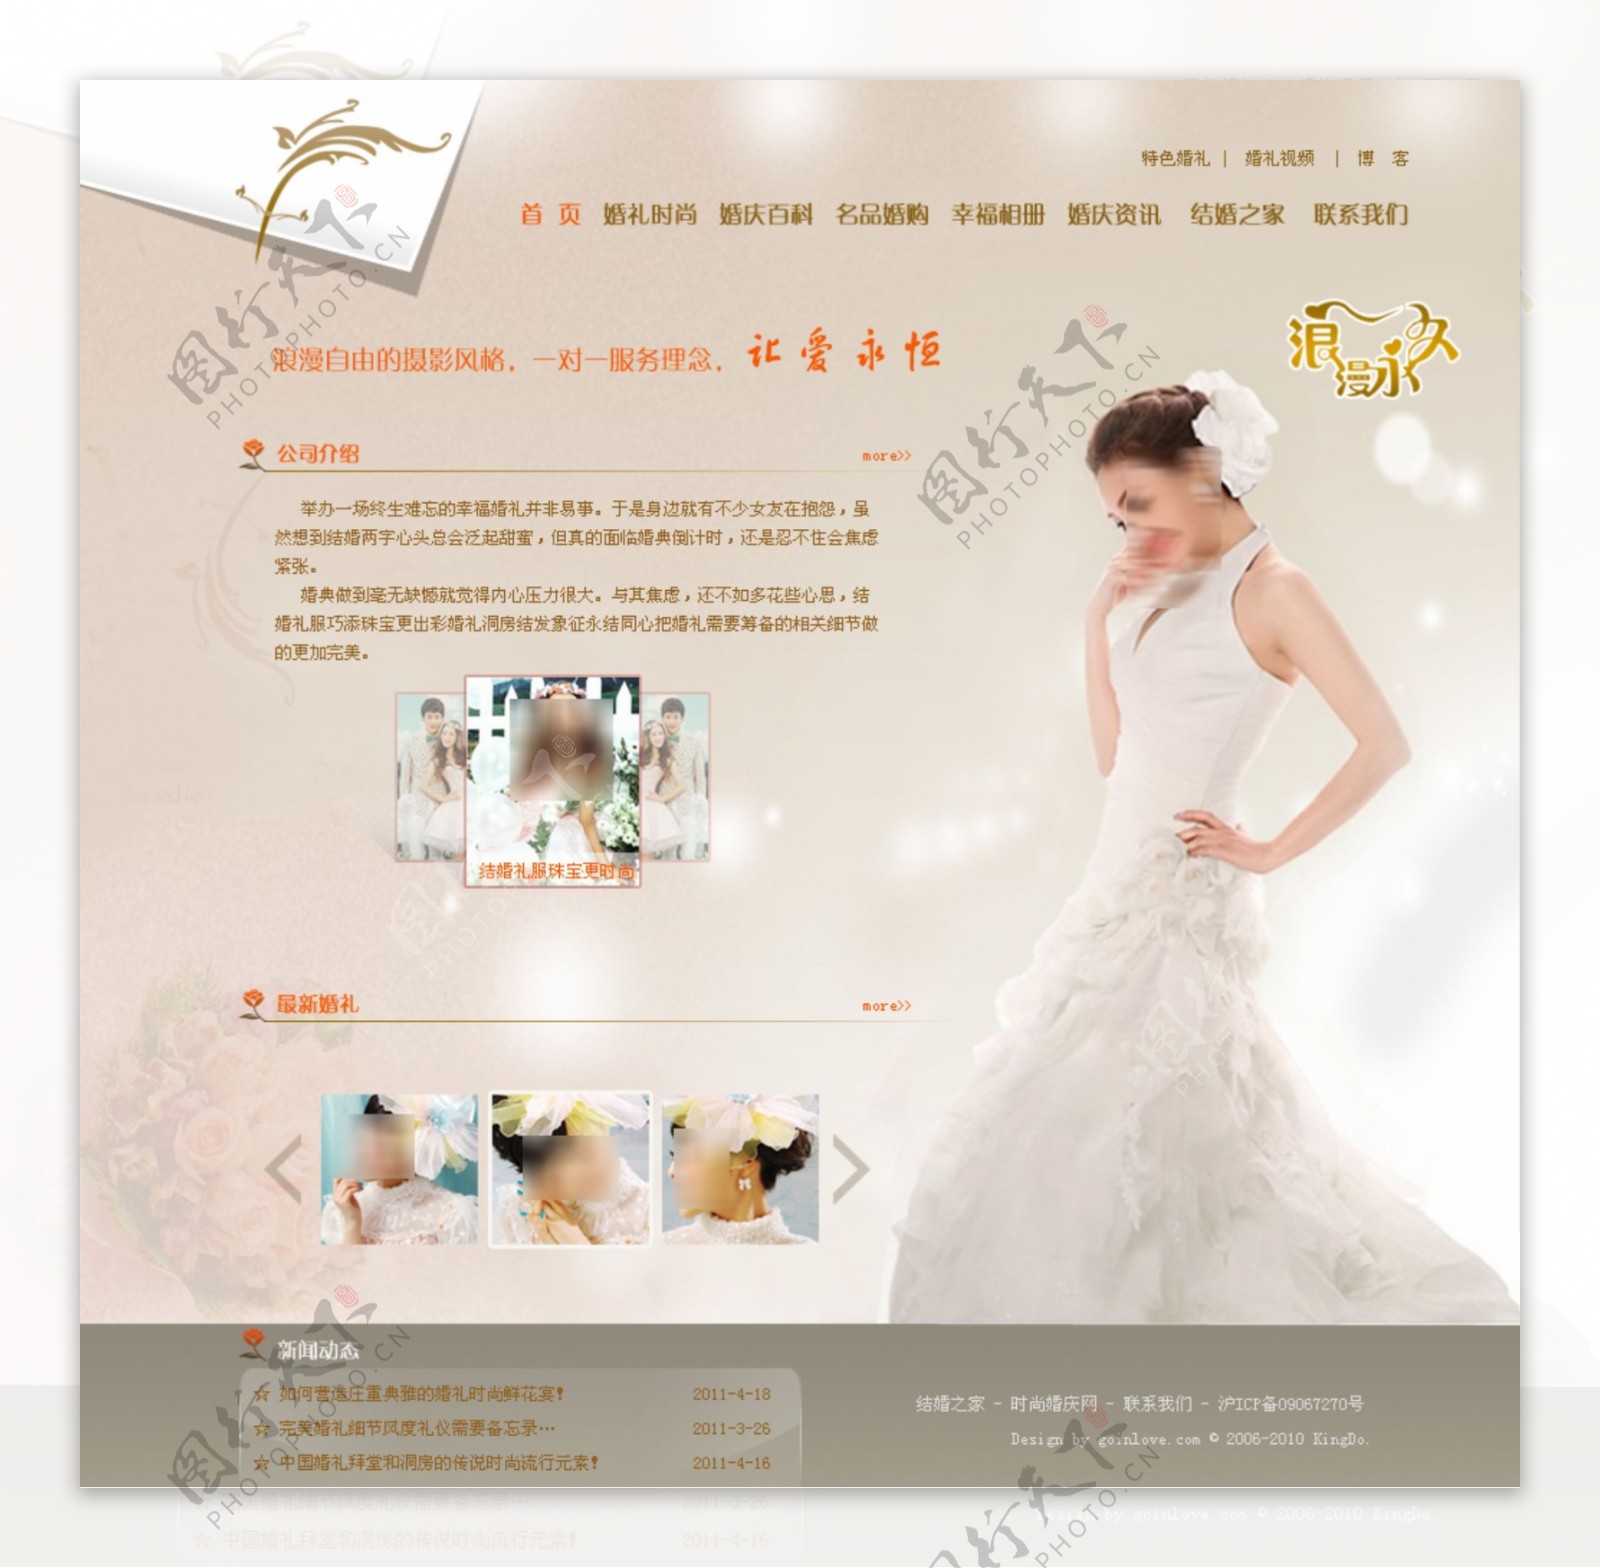 婚纱网站